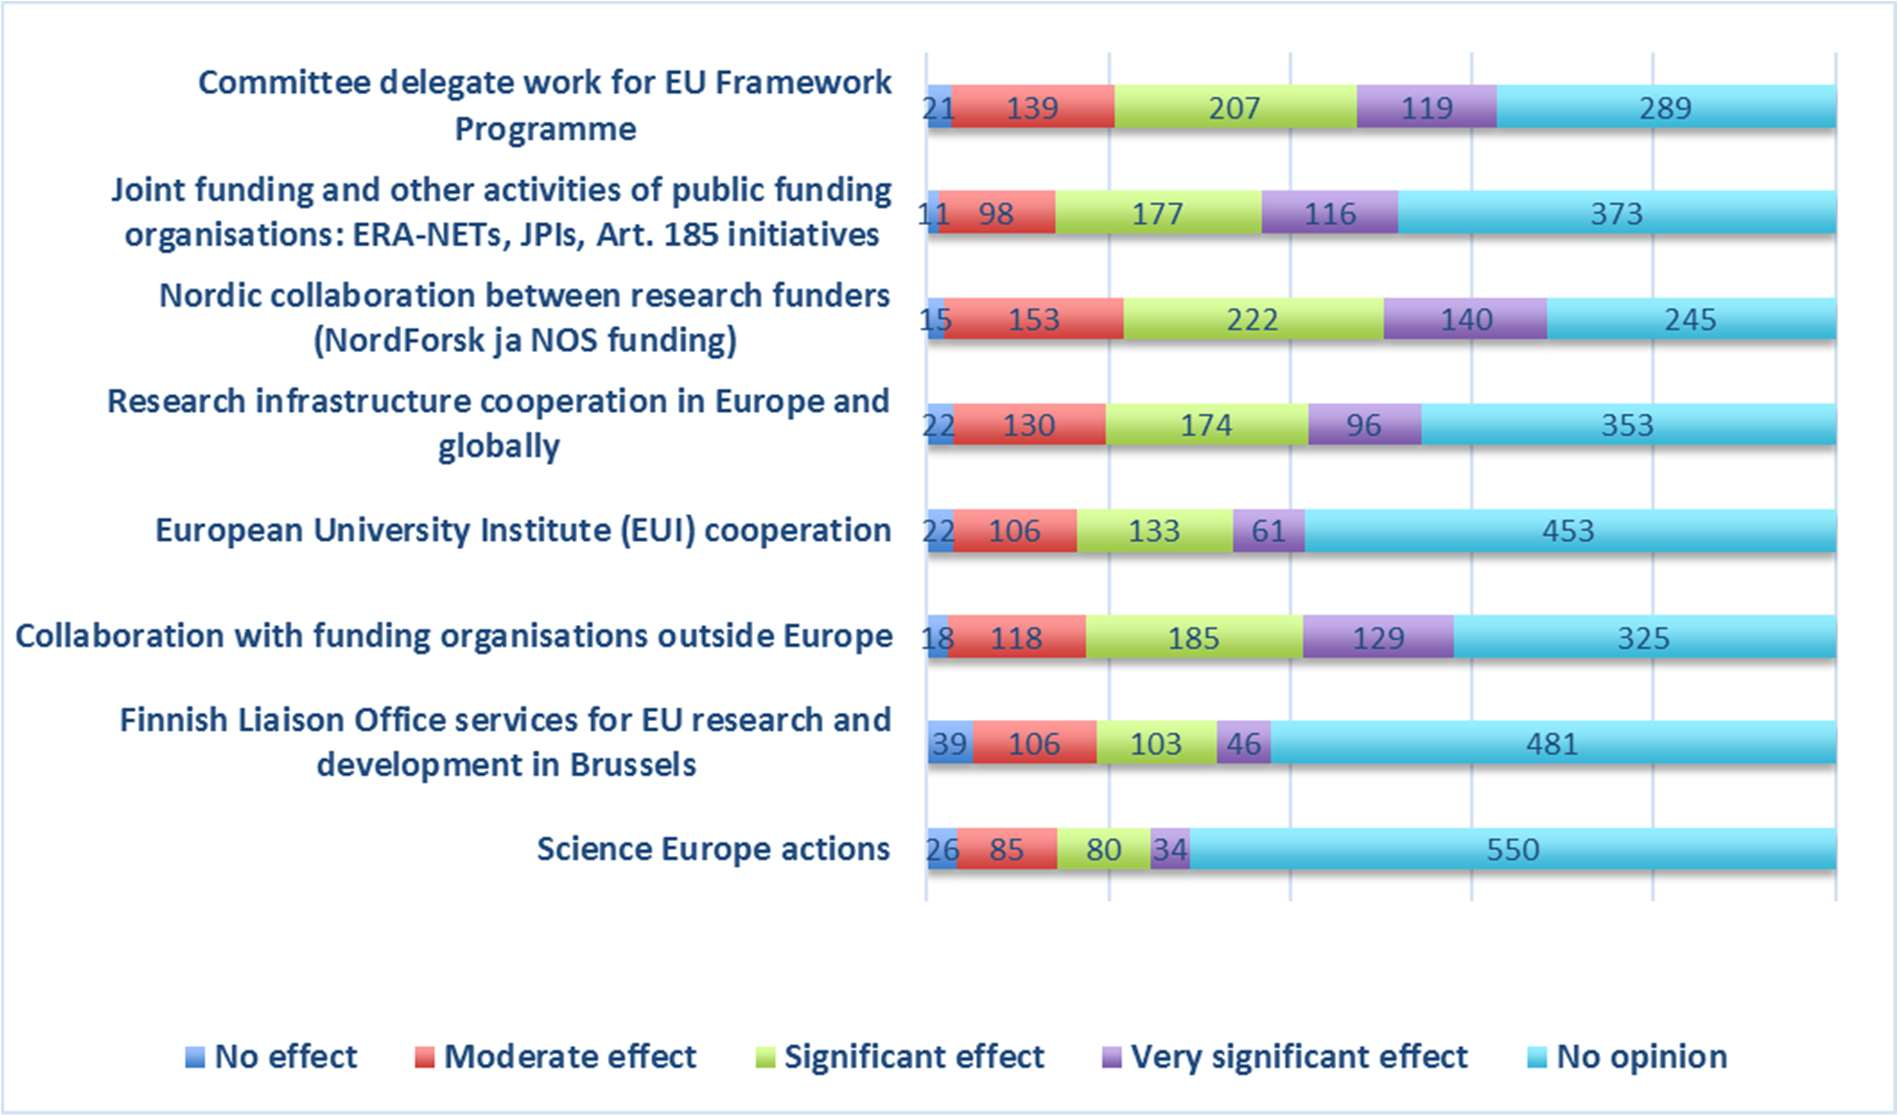 Tärkeimpinä nähdään vaikuttaminen pohjoismaisessa kontekstissa, EU:n tutkimuksen ja innovaatioiden puiteohjelman ohjelmakomiteoissa ja yhteistyössä Euroopan ulkopuolisten